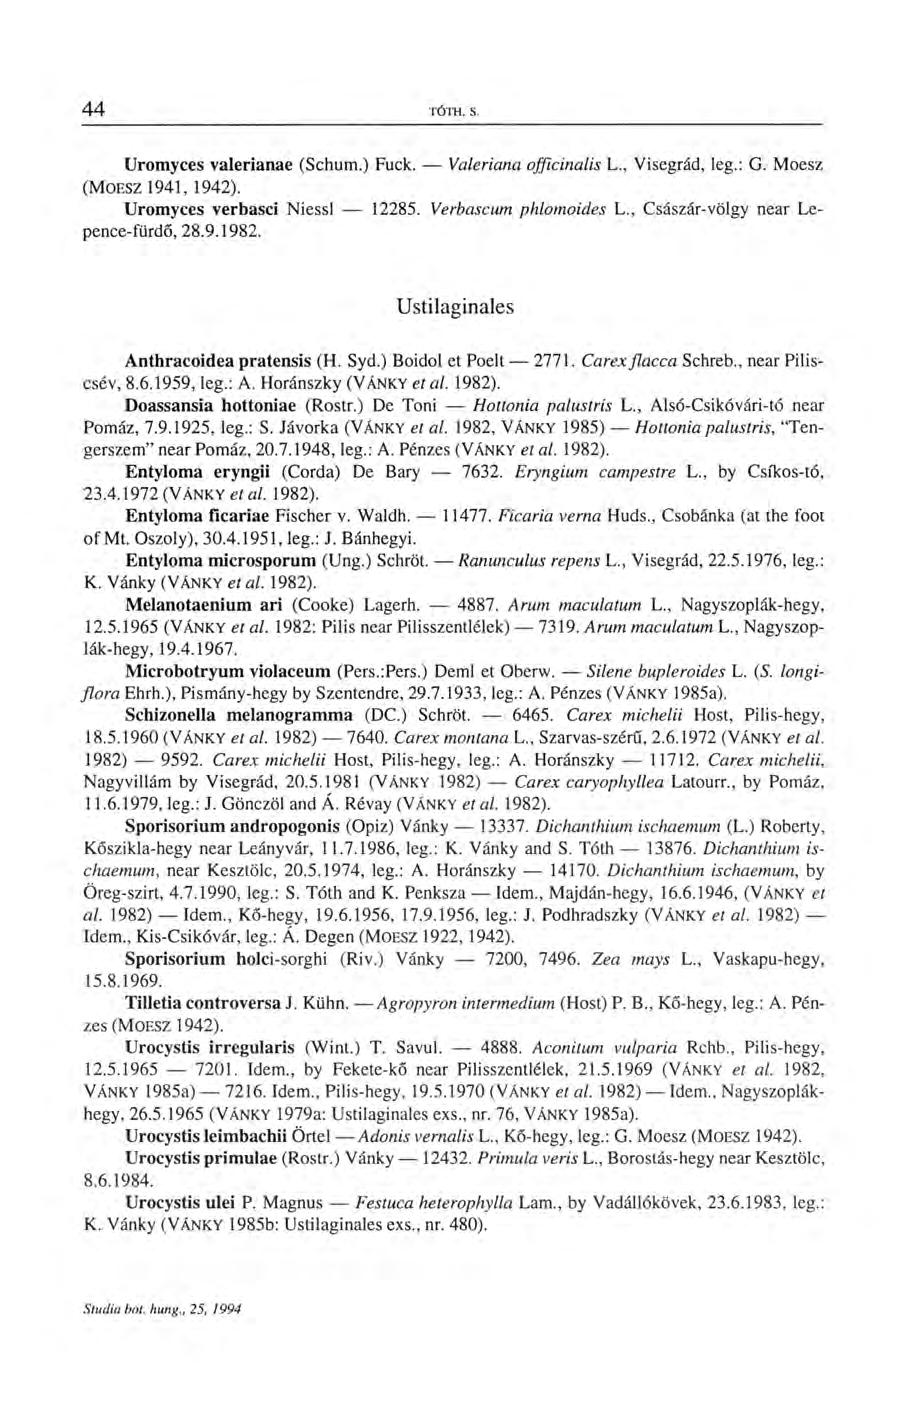 Uromyces valeriánáé (Schum.) Fuck. Valeriana officinalis L., Visegrád, leg.: G. Moesz (MOESZ 1941,1942). Uromyces verbasci Niessl 12285. Verbascum phlomoides L., Császár-völgy near Lepence-fürdő, 28.